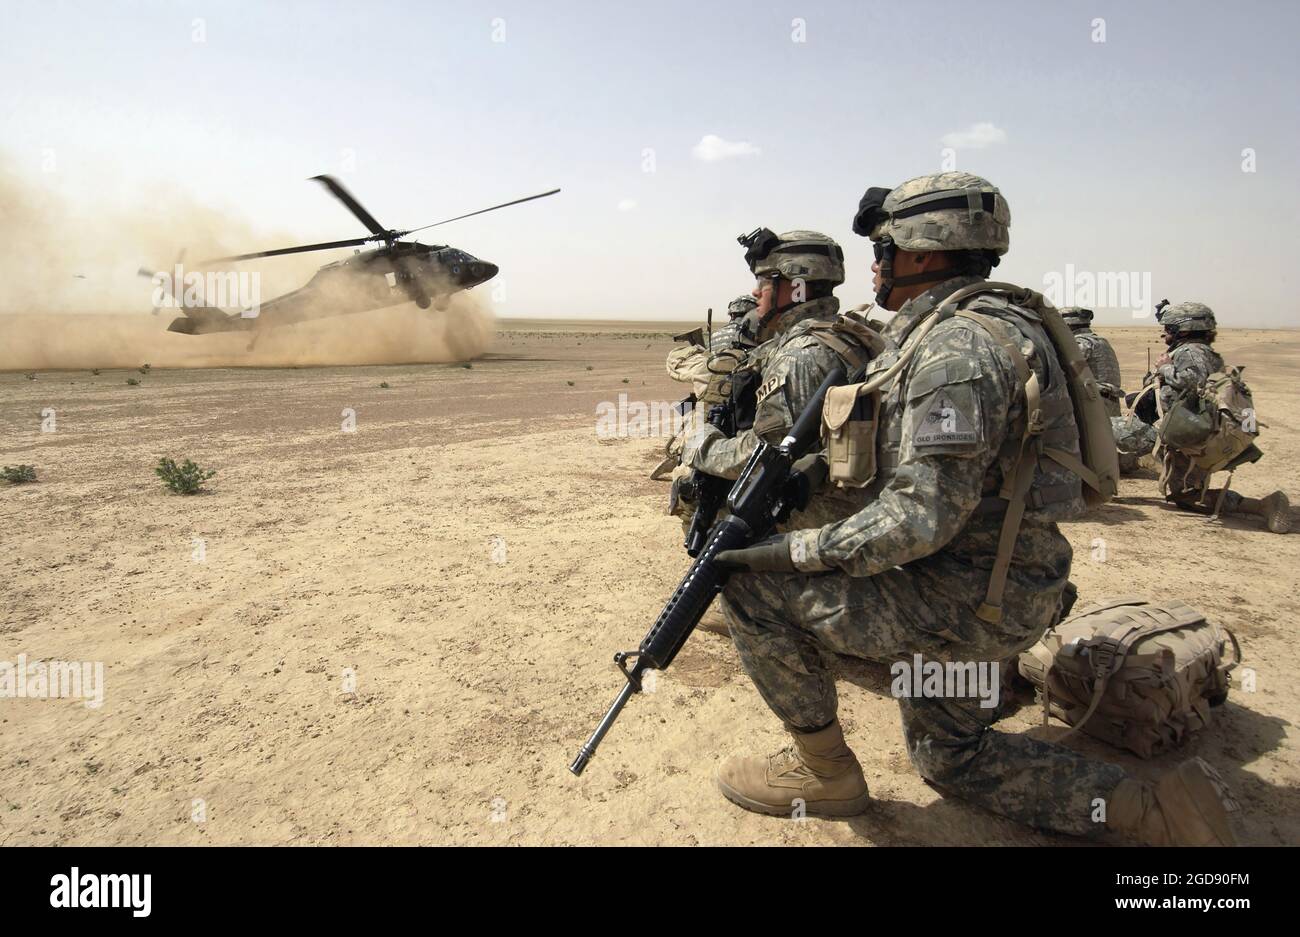 Un hélicoptère utilitaire Bravo Company (B Co), 1er Bataillon (BN), 207e Aviation Regiment (1/207e AVN), 101e Airborne Division (ABN) UH-60 Black Hawk (Blackhawk) se prépare à atterrir pour le ramassage de la 1re Brigade des États-Unis, 1re division d'Armored (AD), Des soldats qui participent à une patrouille de combat d'assaut aérien à Tall Afar, dans la province de Ninawa (zone du désert d'Al-Jazeera), en Irak (IRQ), effectuée pendant l'opération LIBERTÉ IRAQUIENNE. (PHOTO USAF PAR SSGT AARON D. ALLMON II 060322-F-7823A-121) Banque D'Images